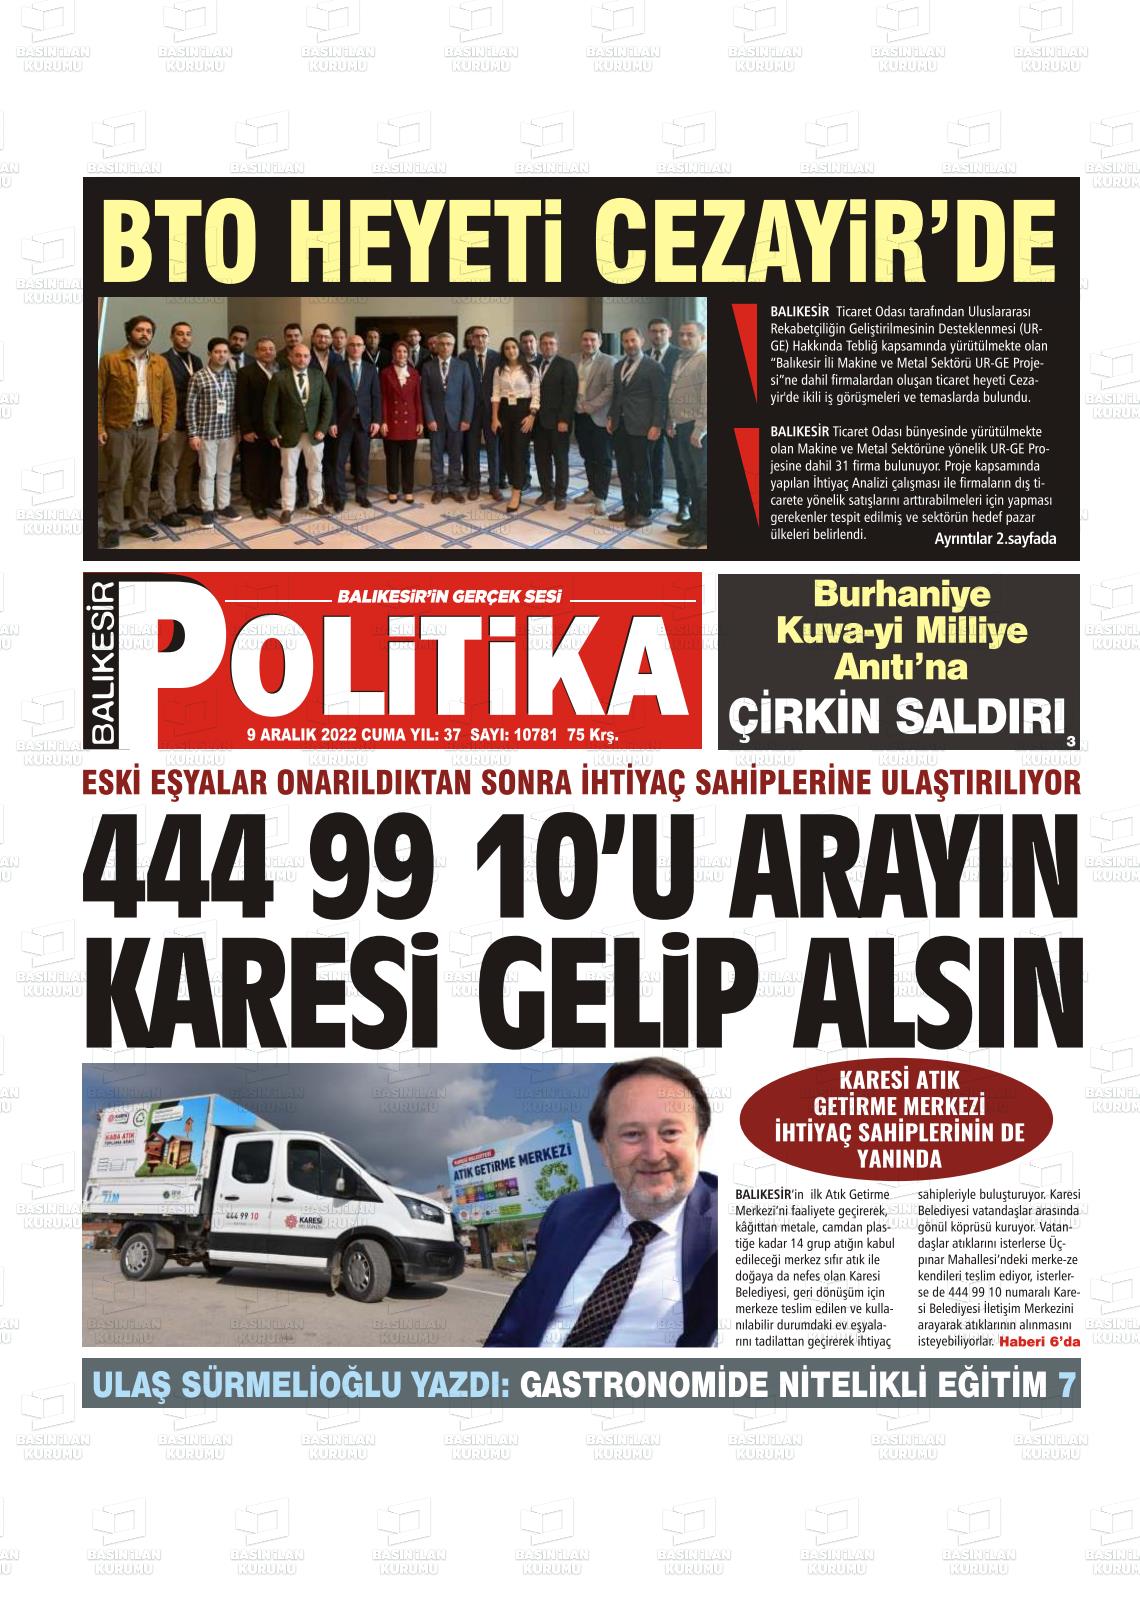 09 Aralık 2022 Balıkesir Politika Gazete Manşeti